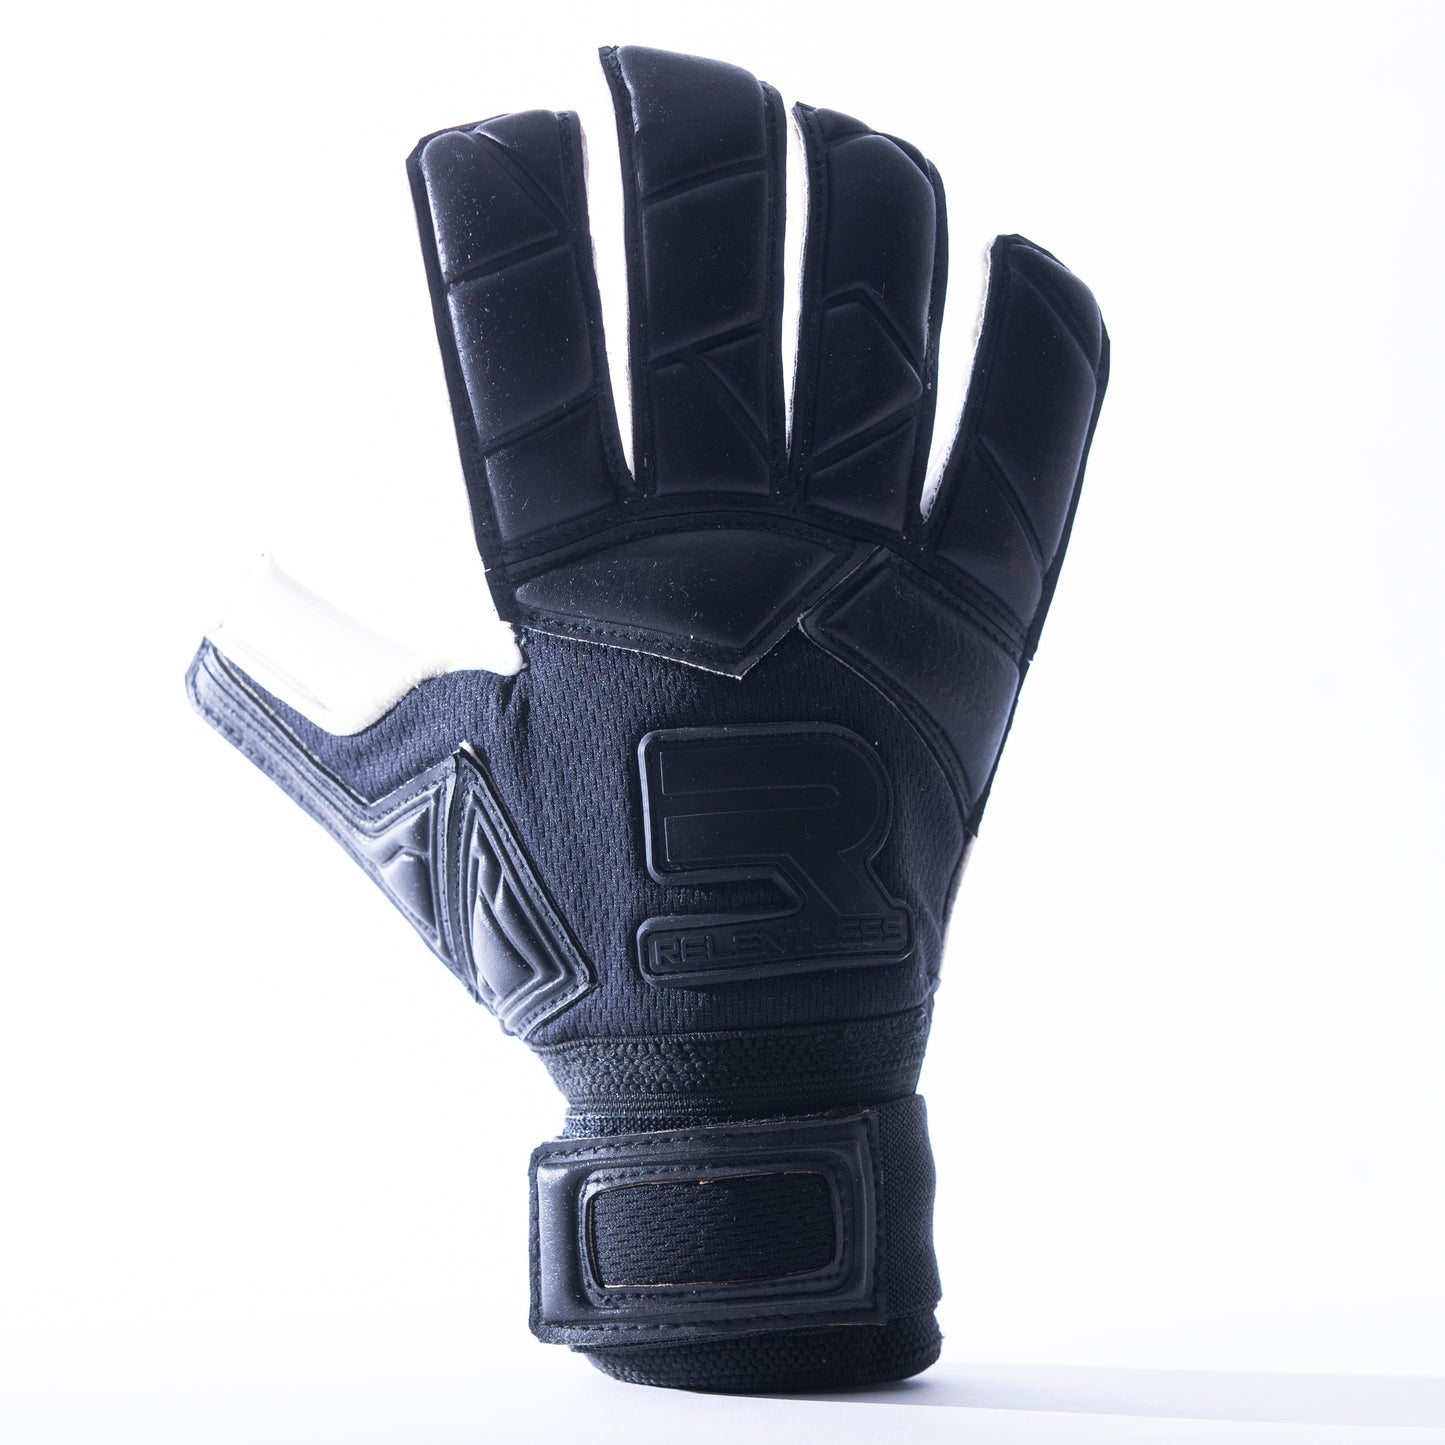 Black goalkeeper glove